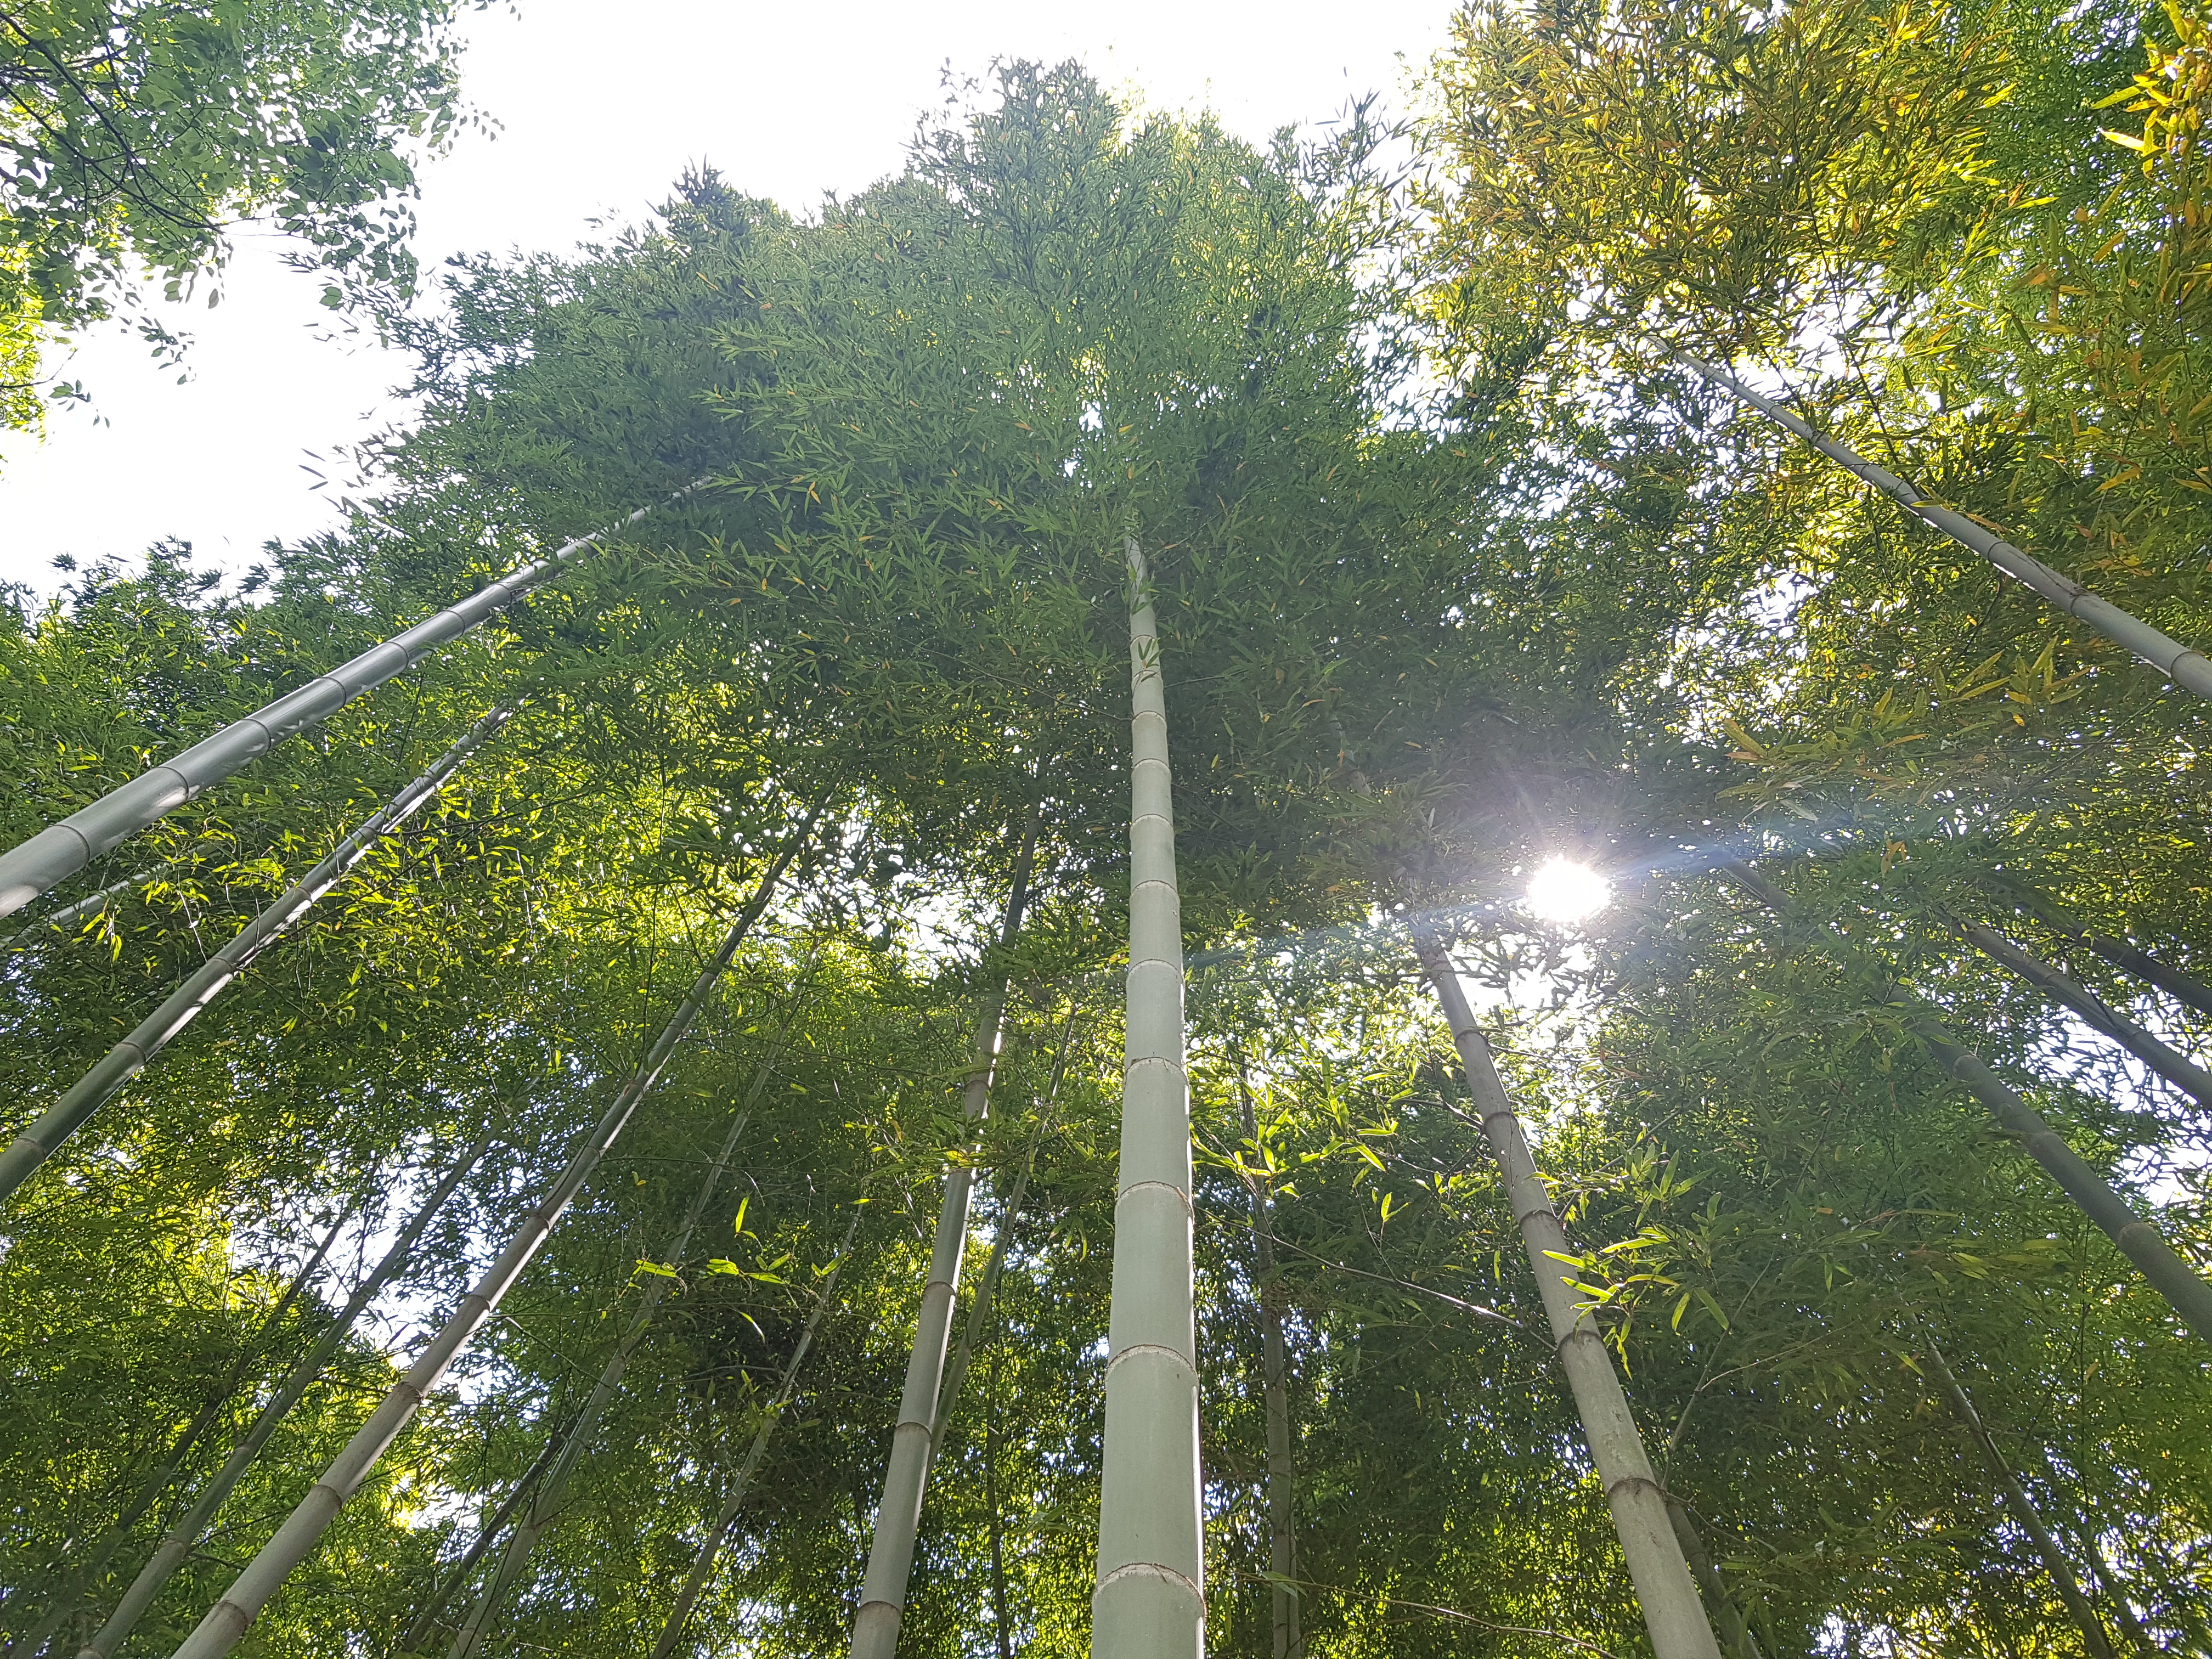 대나무숲 1㏊(6200그루)의 이산화탄소 흡수량이 연간 33.5t으로 소나무(9.7t)의 3.5배에 달하는 것으로 분석됐다. 국립산림과학원 제공